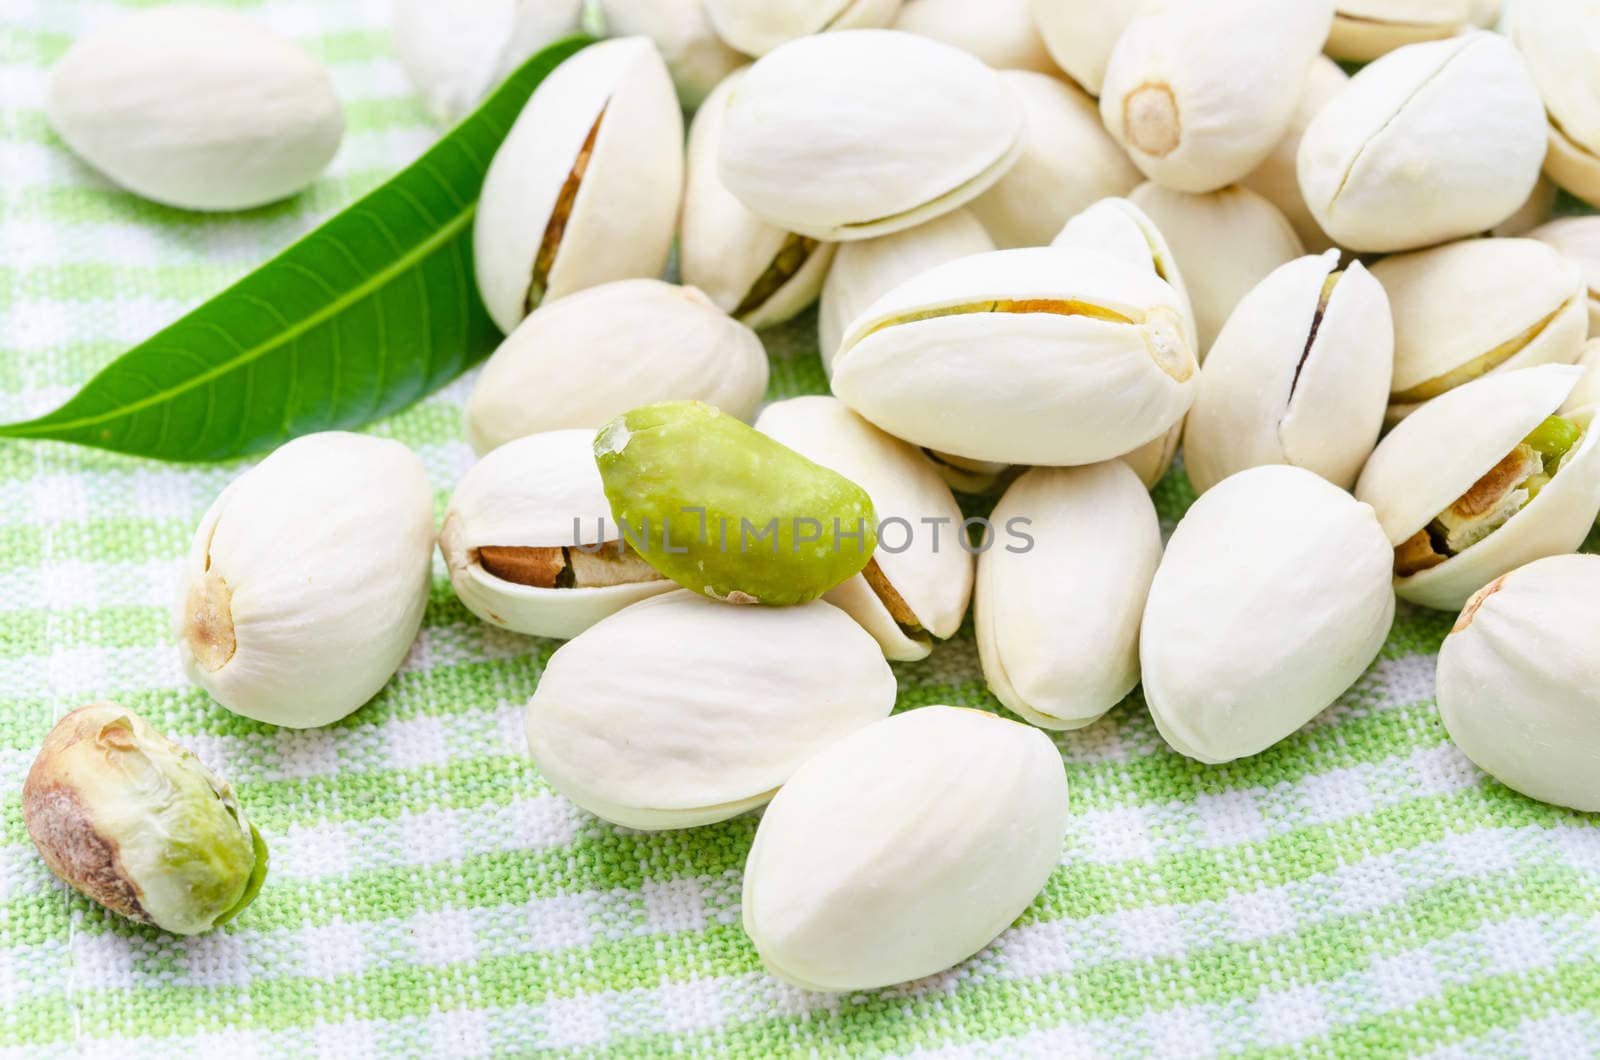 Pistachio nuts by Gamjai